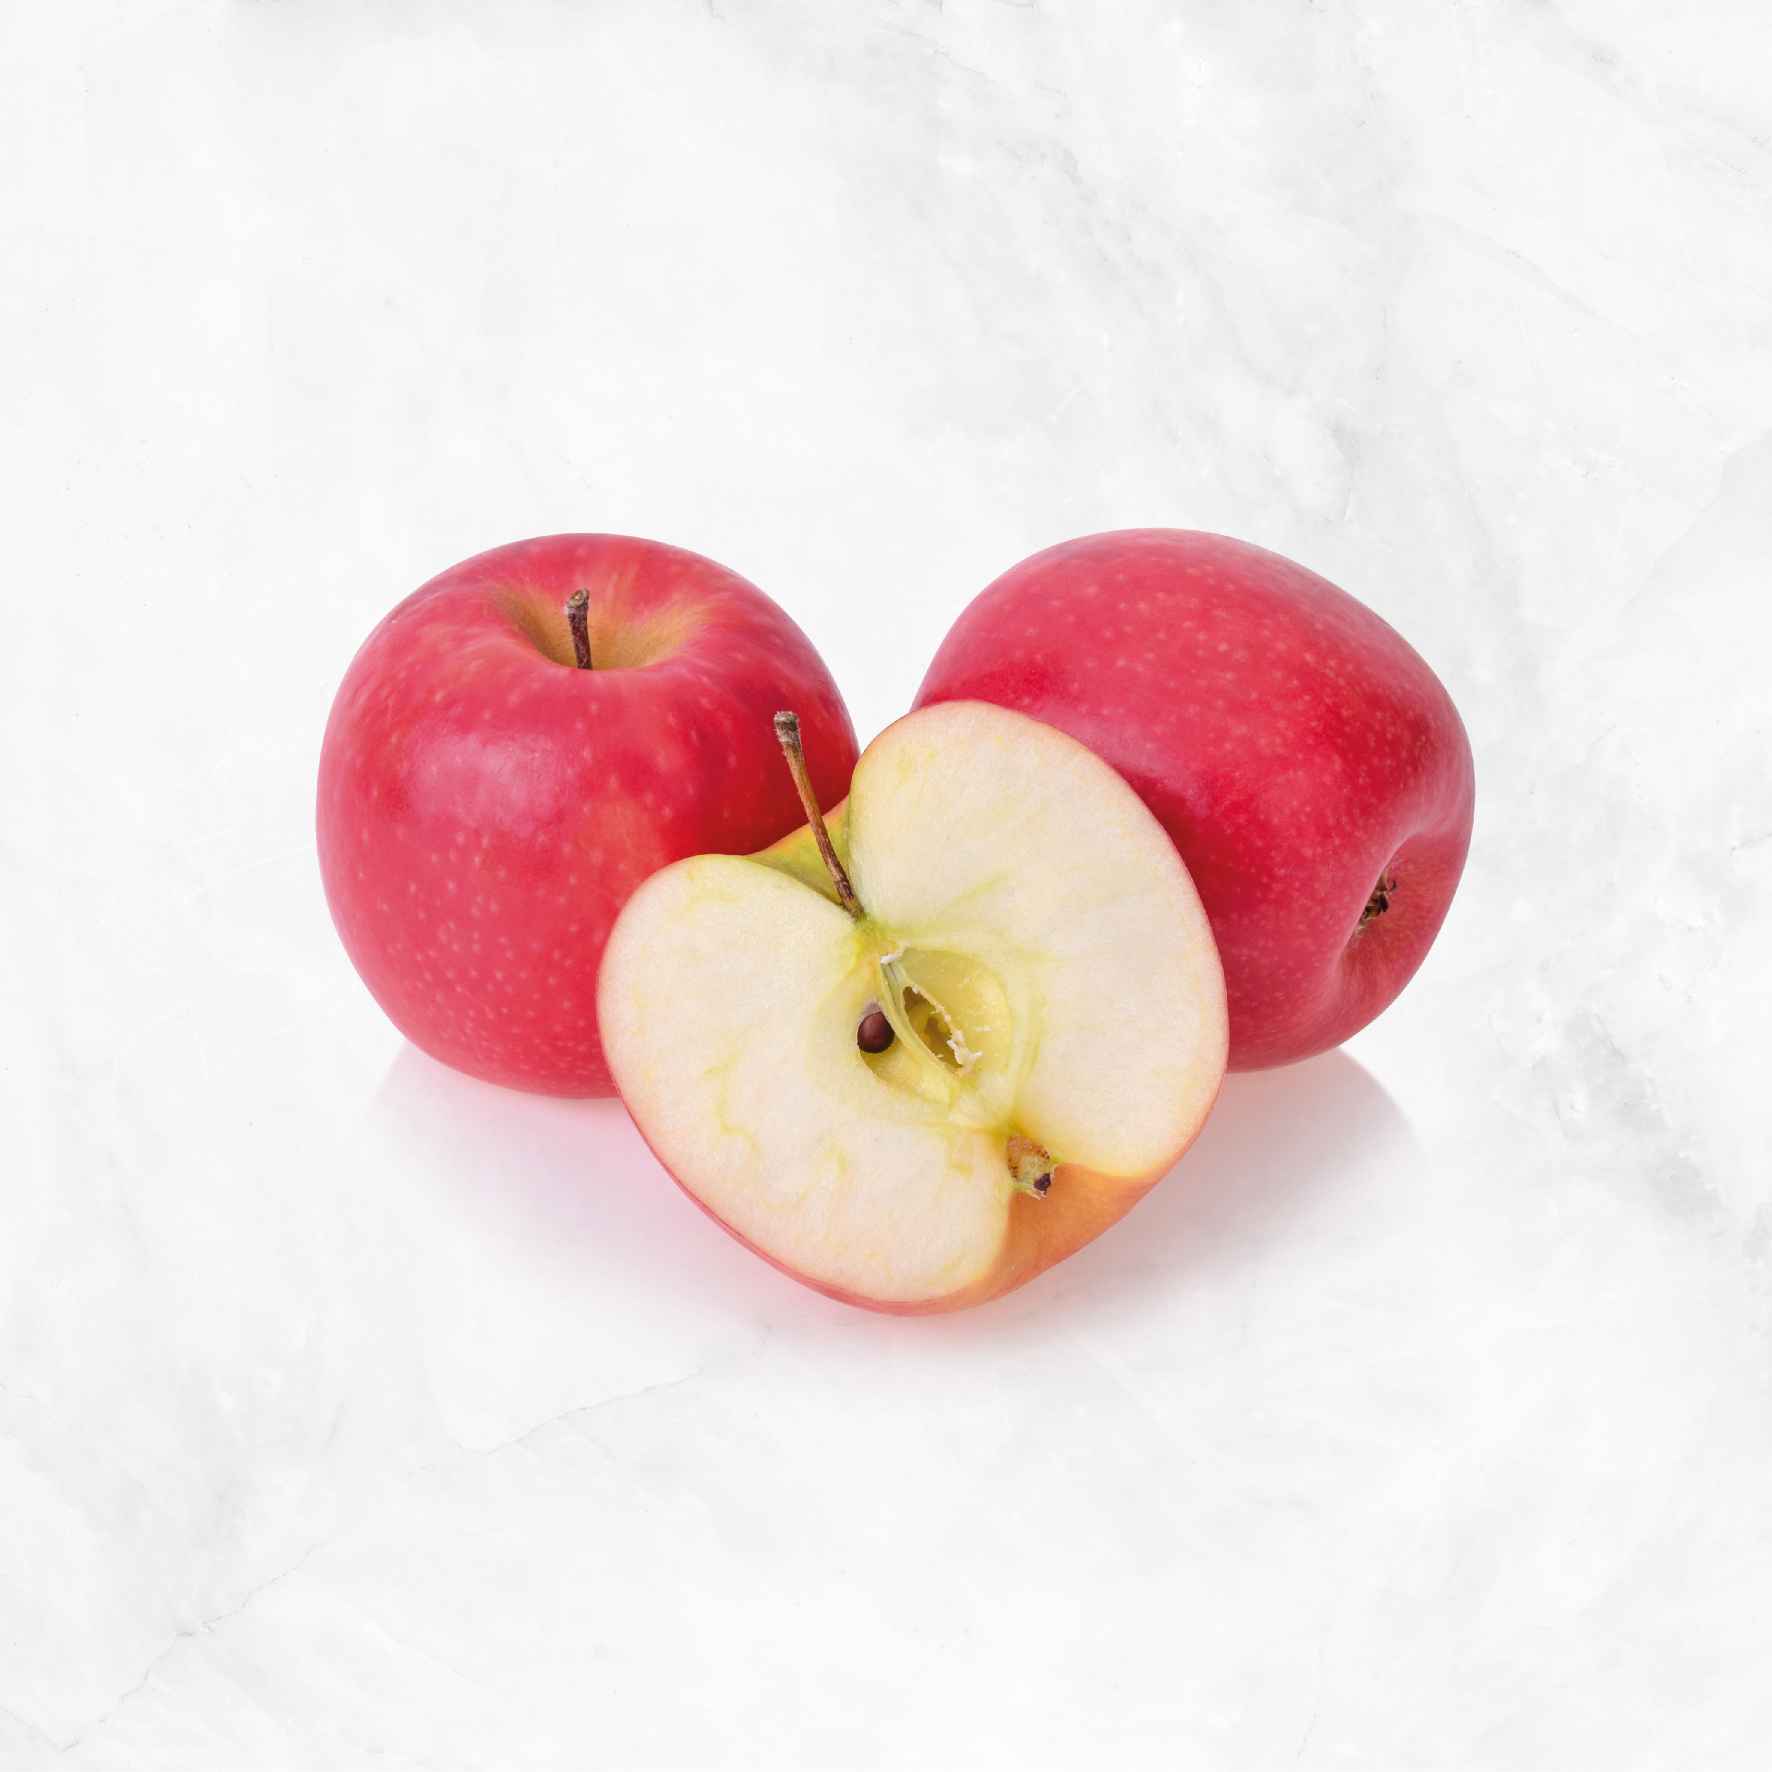 Organic Fuji Apples, 4 lbs